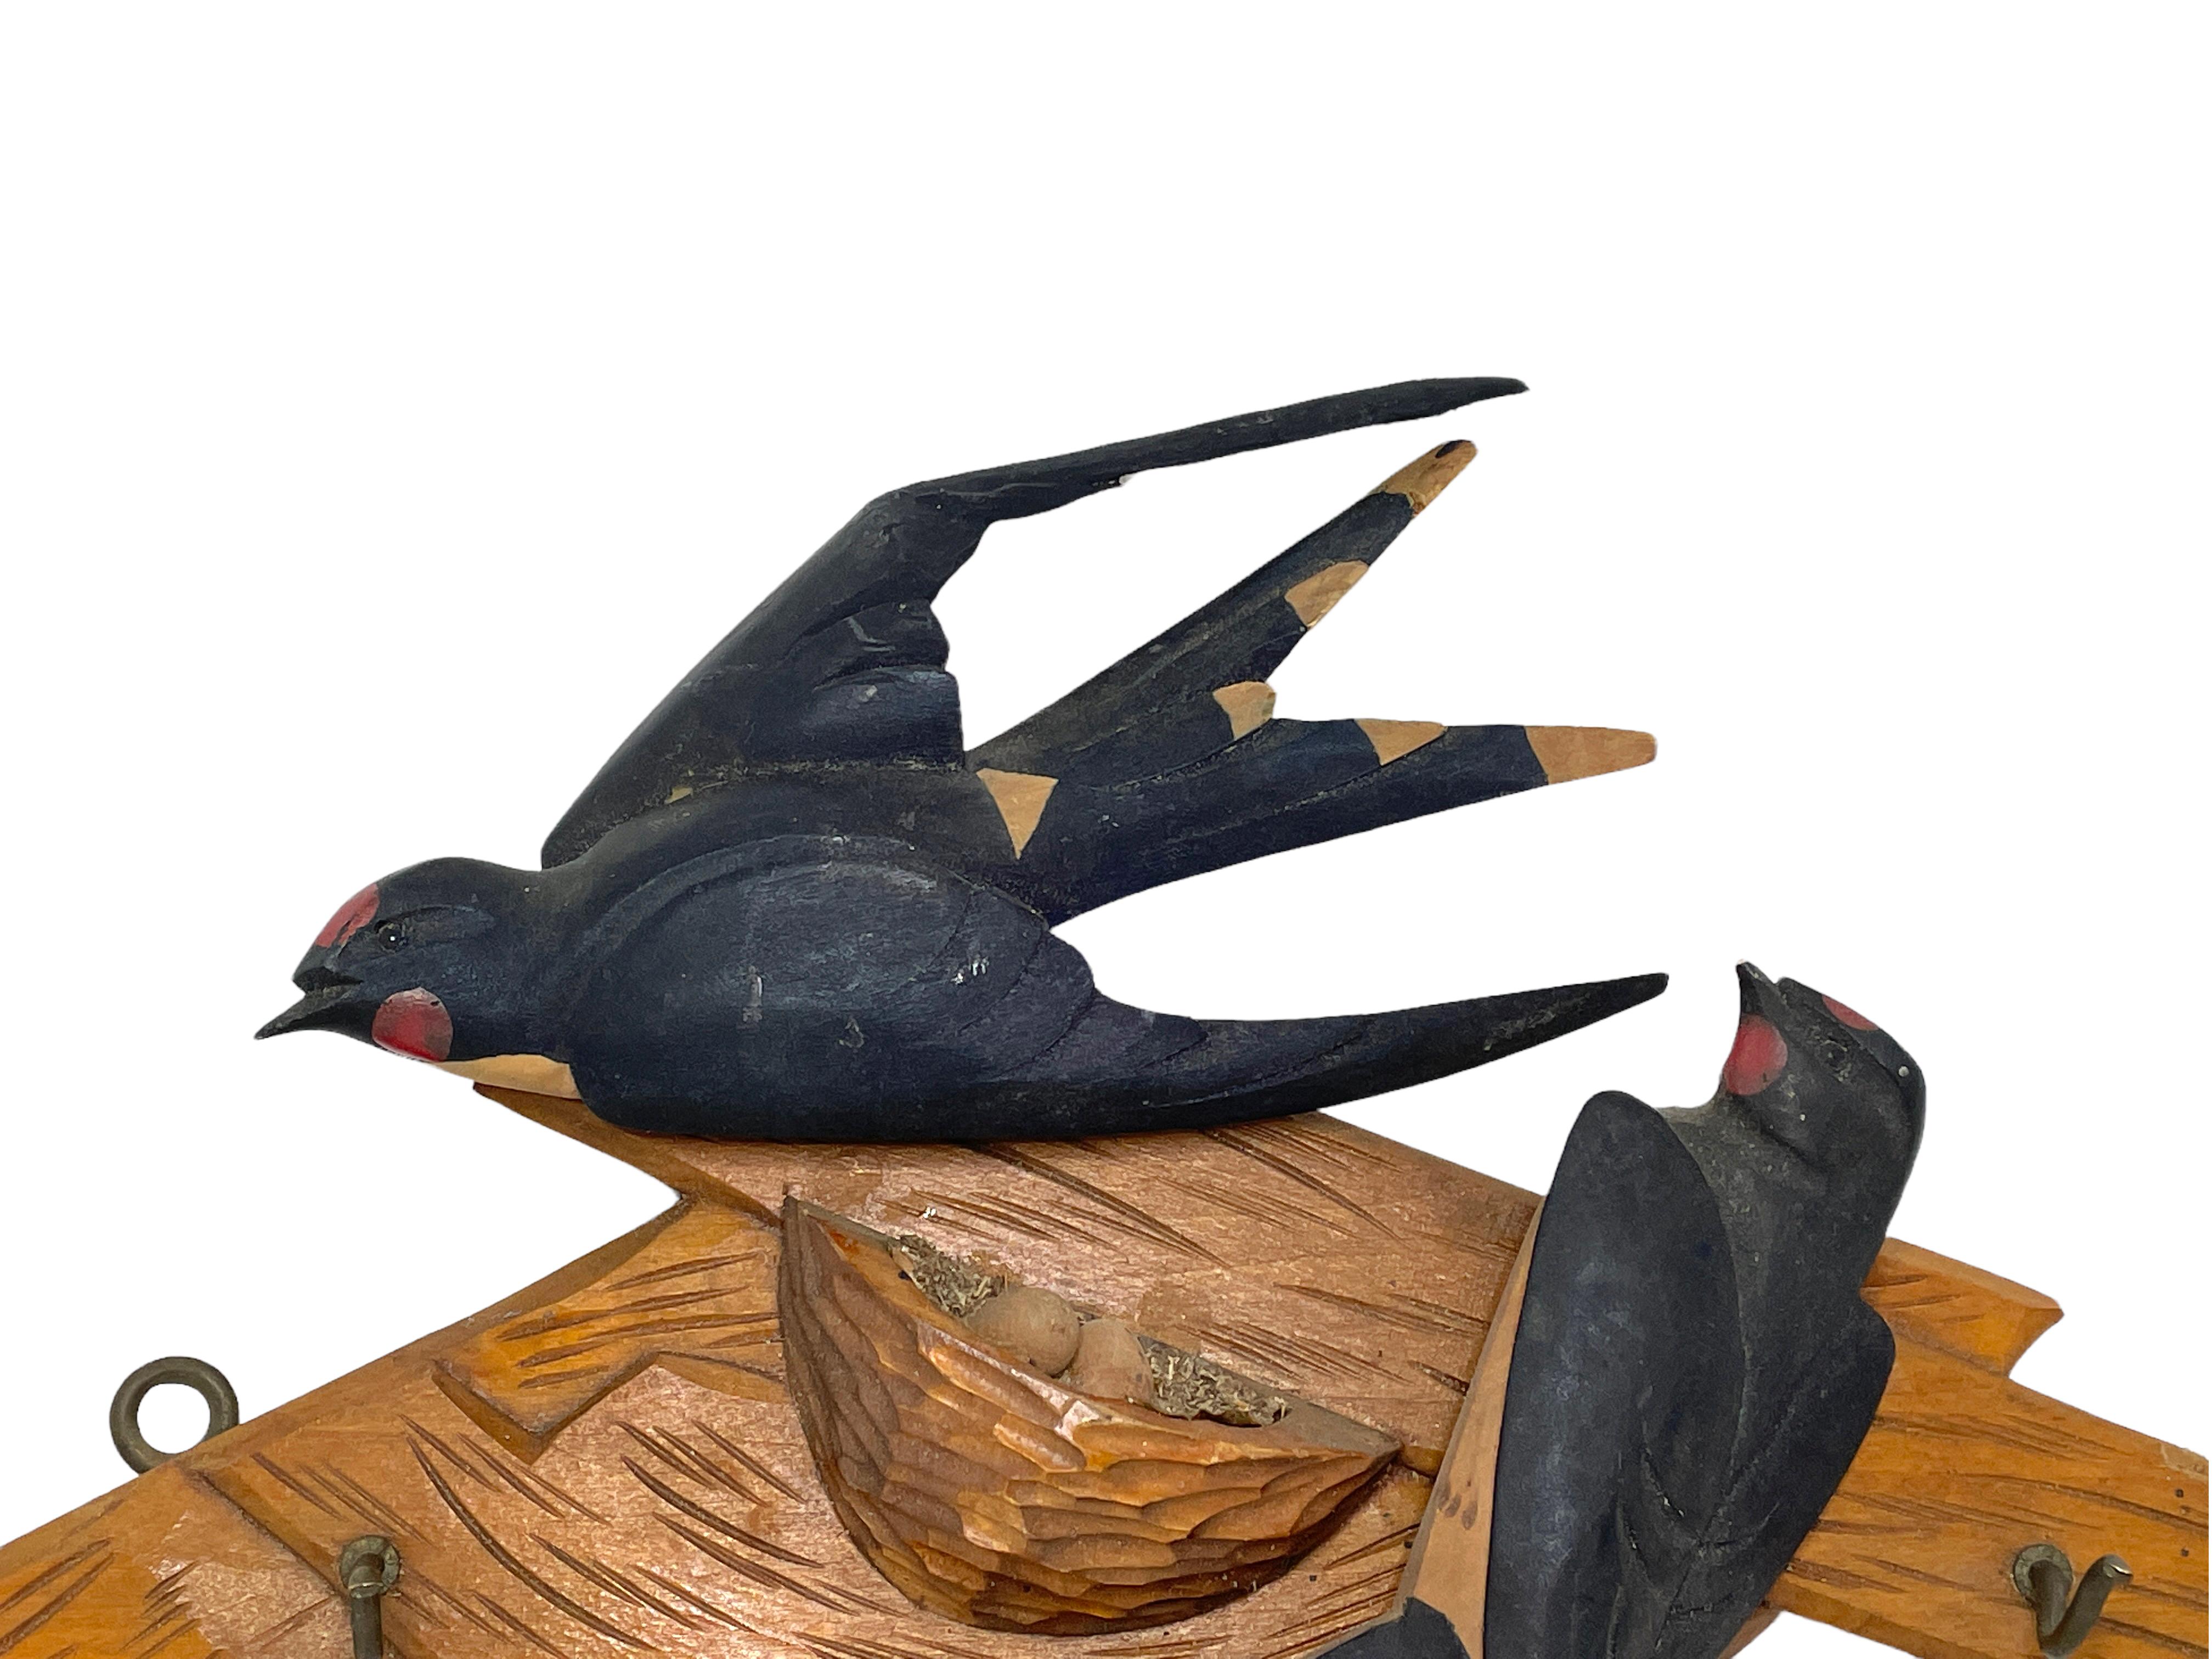 Hand-Carved Swallow's Nest Key Rack Holder Wall Mount Vintage Folk Art German, Black Forest